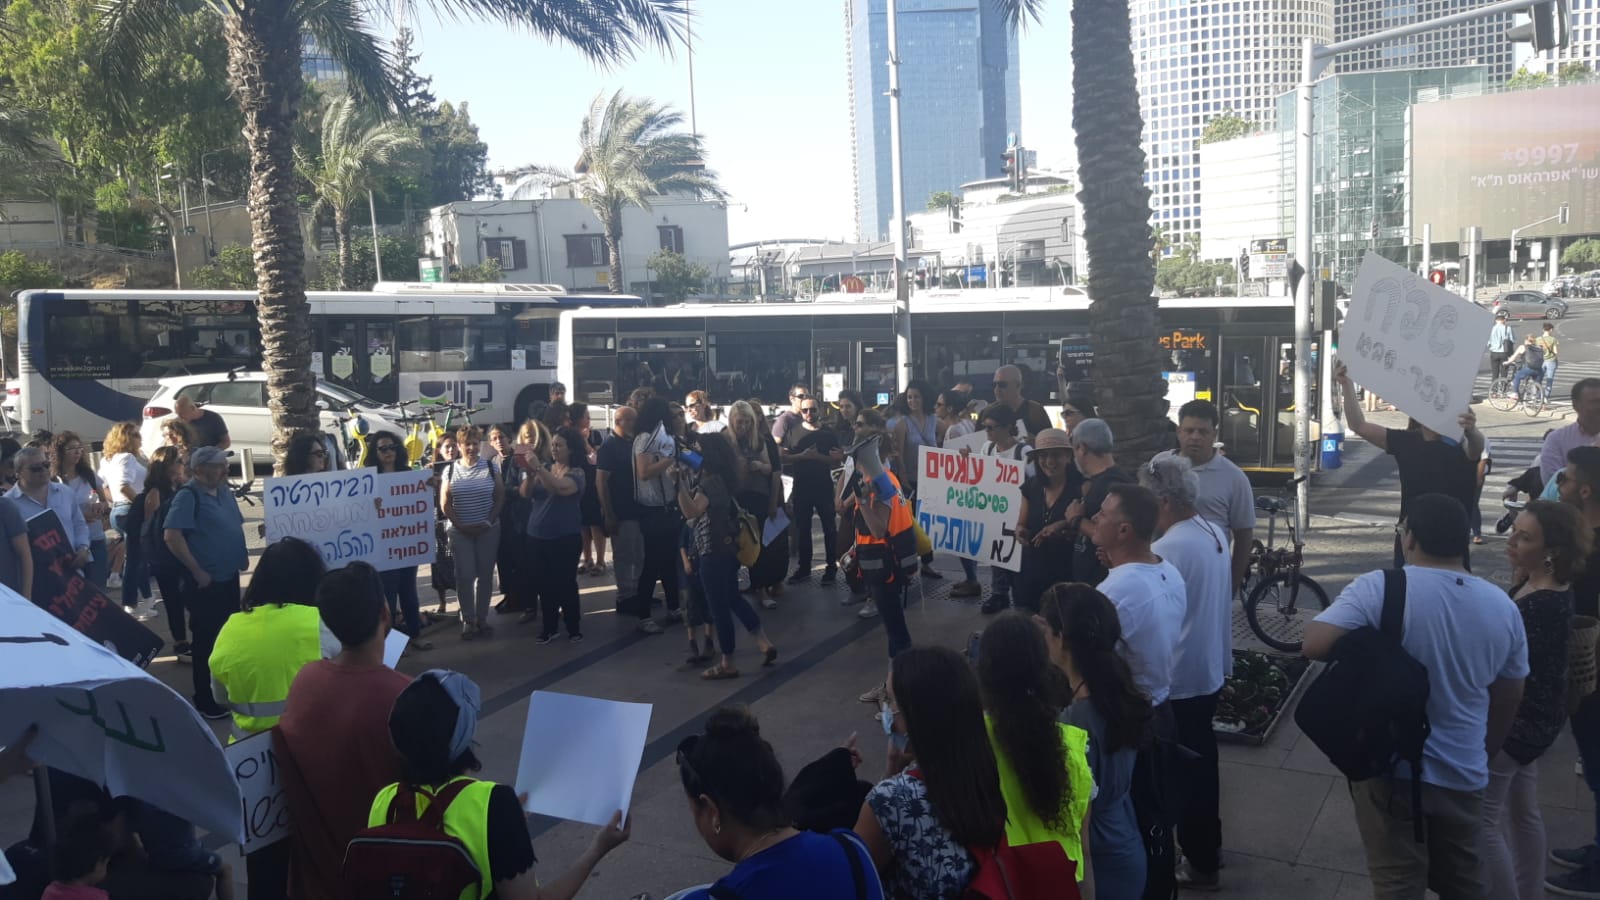 הפגנת הפסיכולוגים החינוכיים מול קריית הממשלה בתל אביב במחאה על עומסי העבודה, 30 במאי 2021 (צילום: מיכל מרנץ)